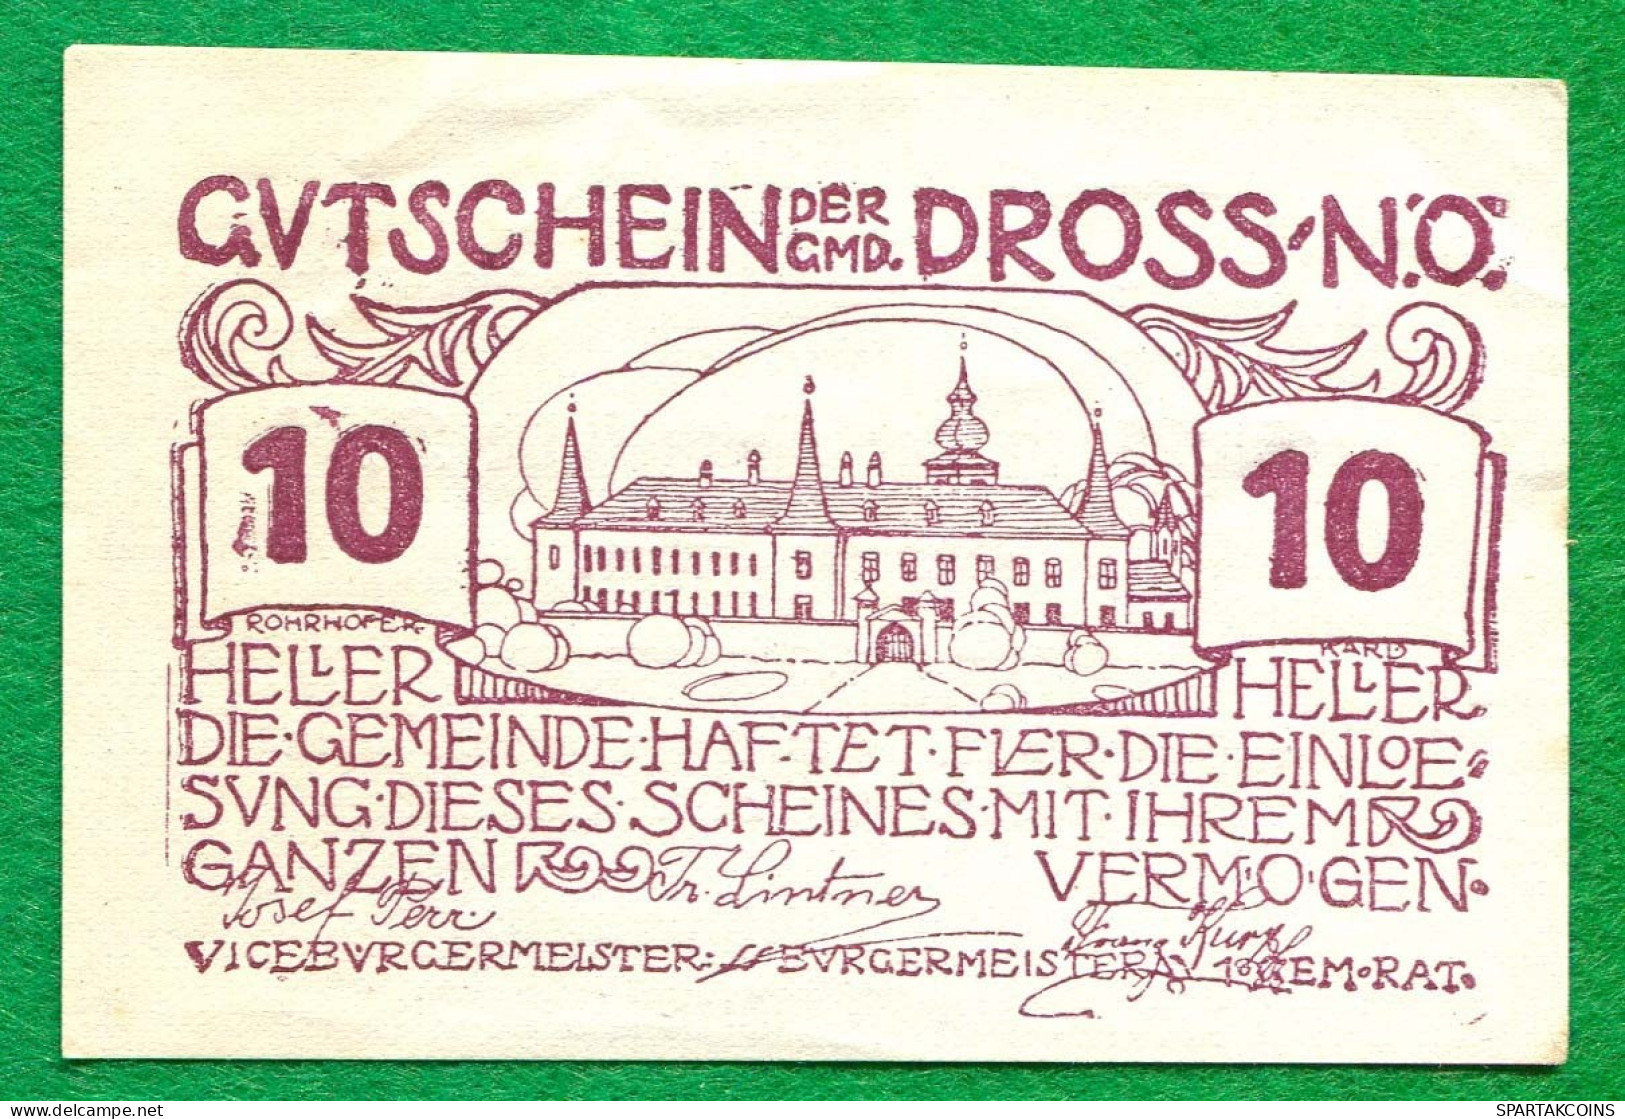 10 Heller 1920 DROSS Österreich UNC Notgeld Papiergeld Banknote #P10279 - [11] Local Banknote Issues